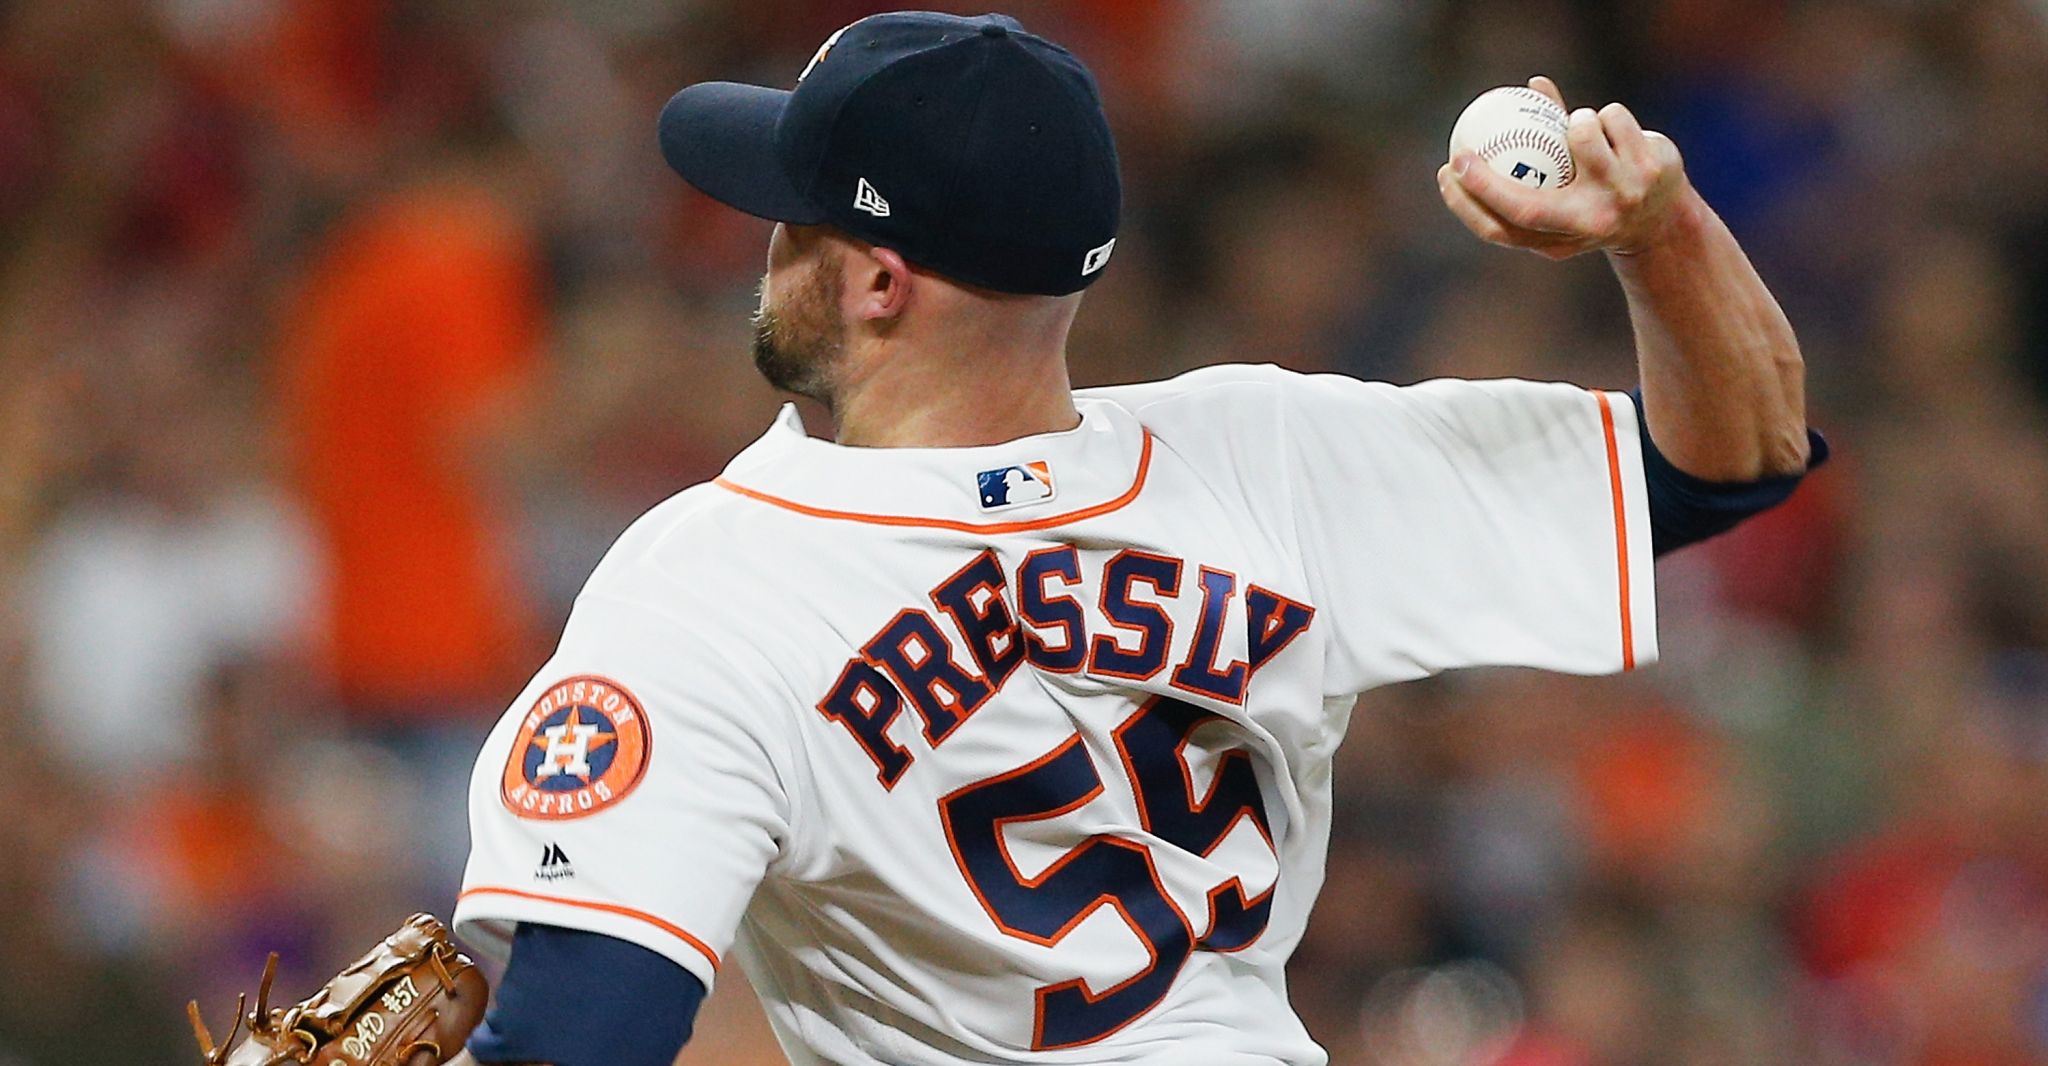 Ryan Pressly returns to Texas to bolster Astros' bullpen